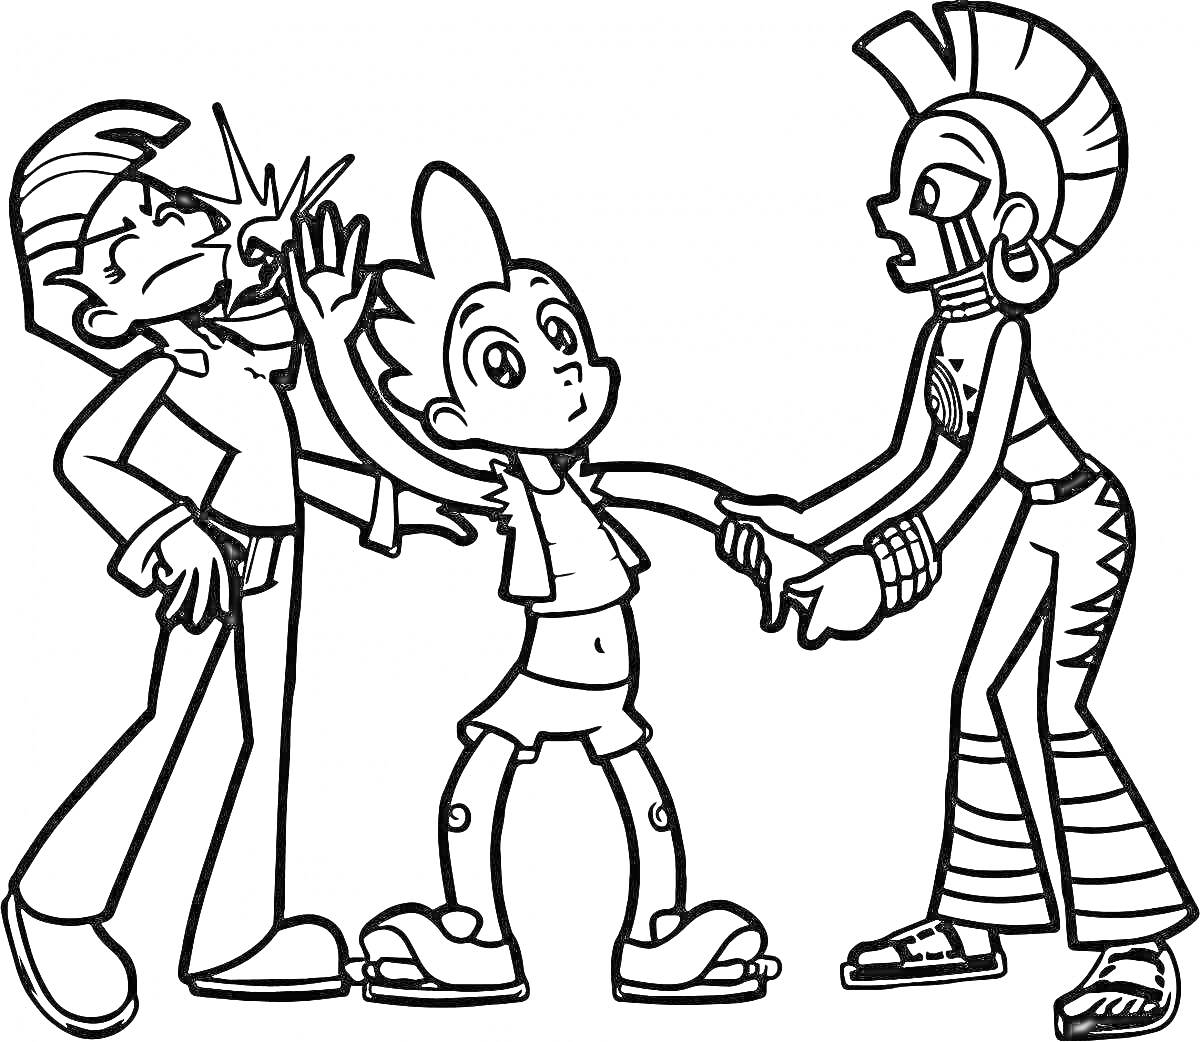 Раскраска Трое персонажей со спайк прическами, один из персонажей отталкивает другого, третий держит за руку первого